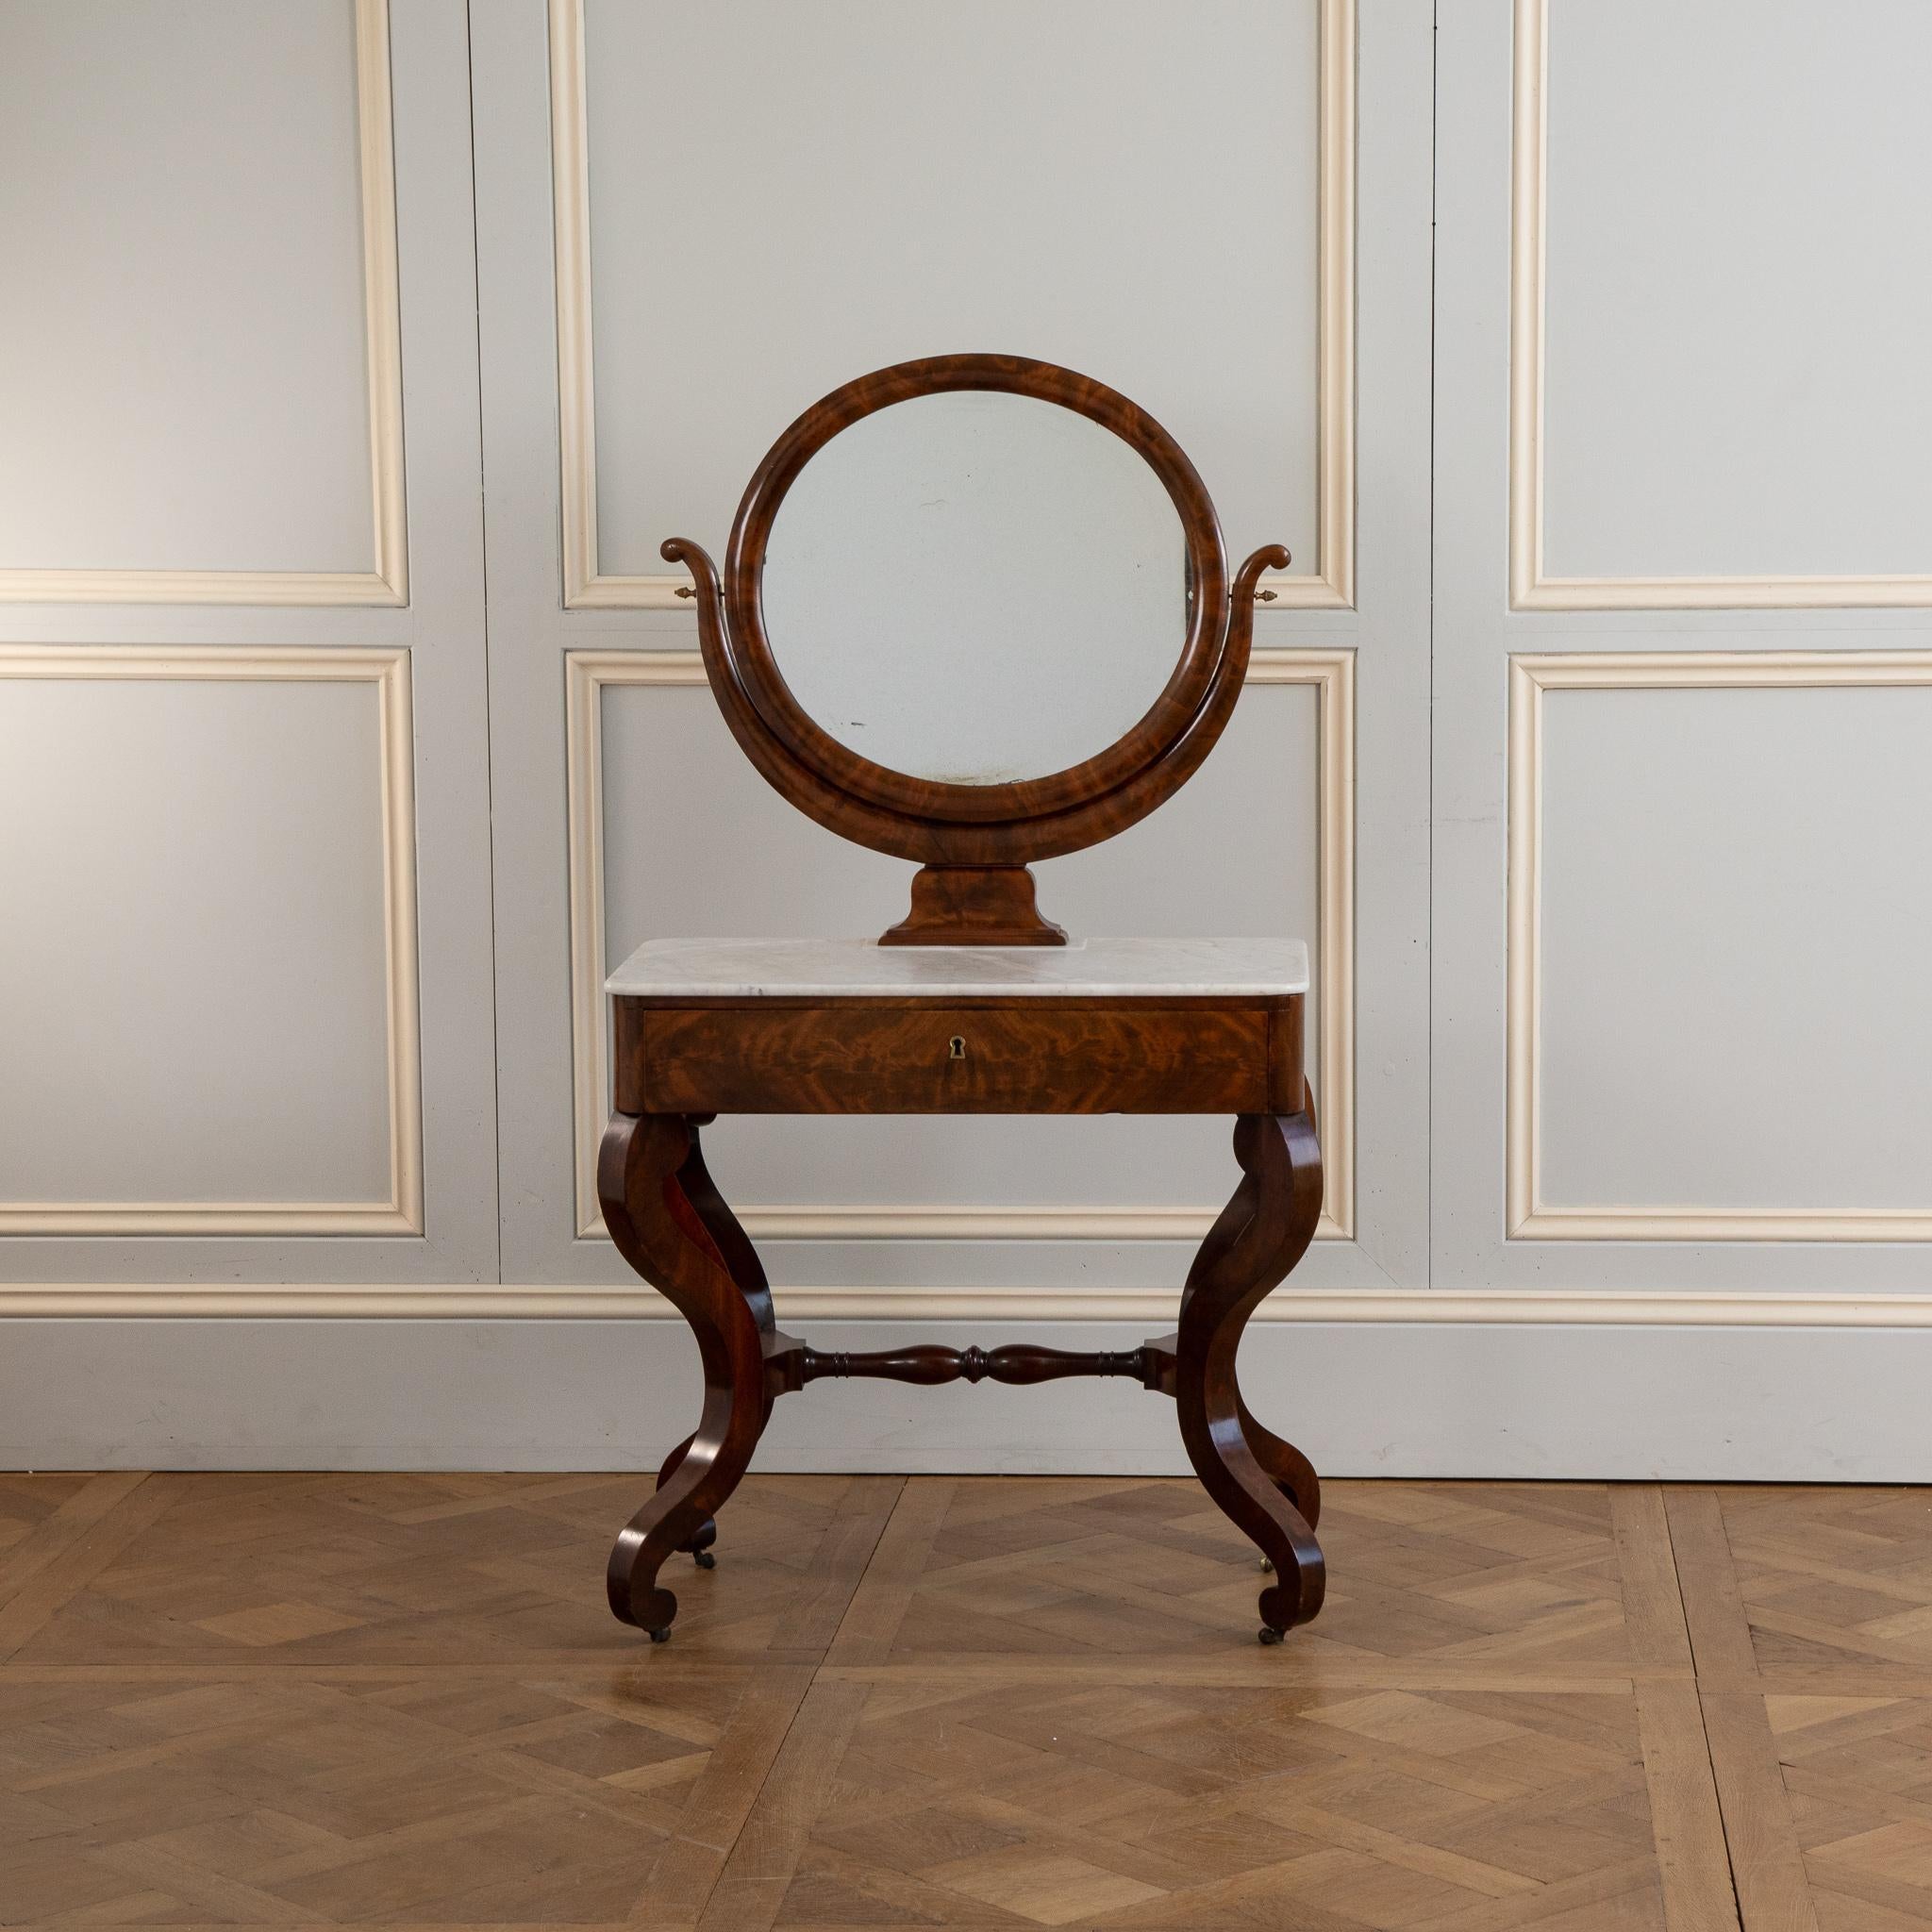 ein sehr eleganter französischer Mahagoni-Schminktisch aus der Restaurationszeit (frühes 19. Jahrhundert).
Sitzen auf 4 formschönen Füßen 
 hat eine Marmorplatte mit einem Psyche-Spiegel.
die Schublade hat eine Lederplatte, die als Schreibtisch